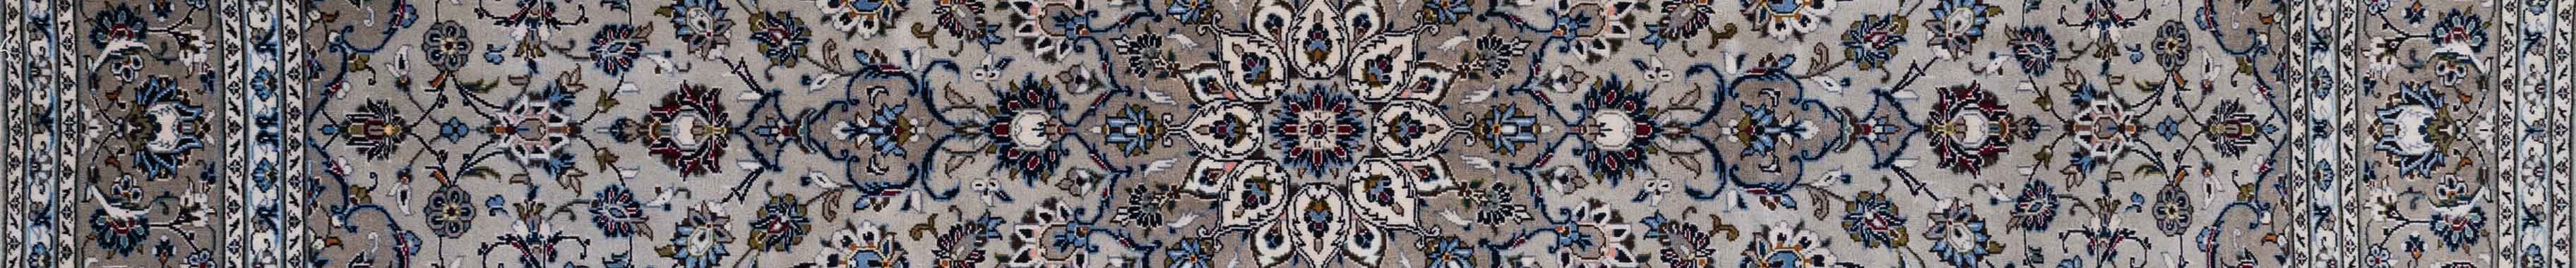 Kashan Persian Carpet Rug N1Carpet Canada Montreal Tapis Persan 2650